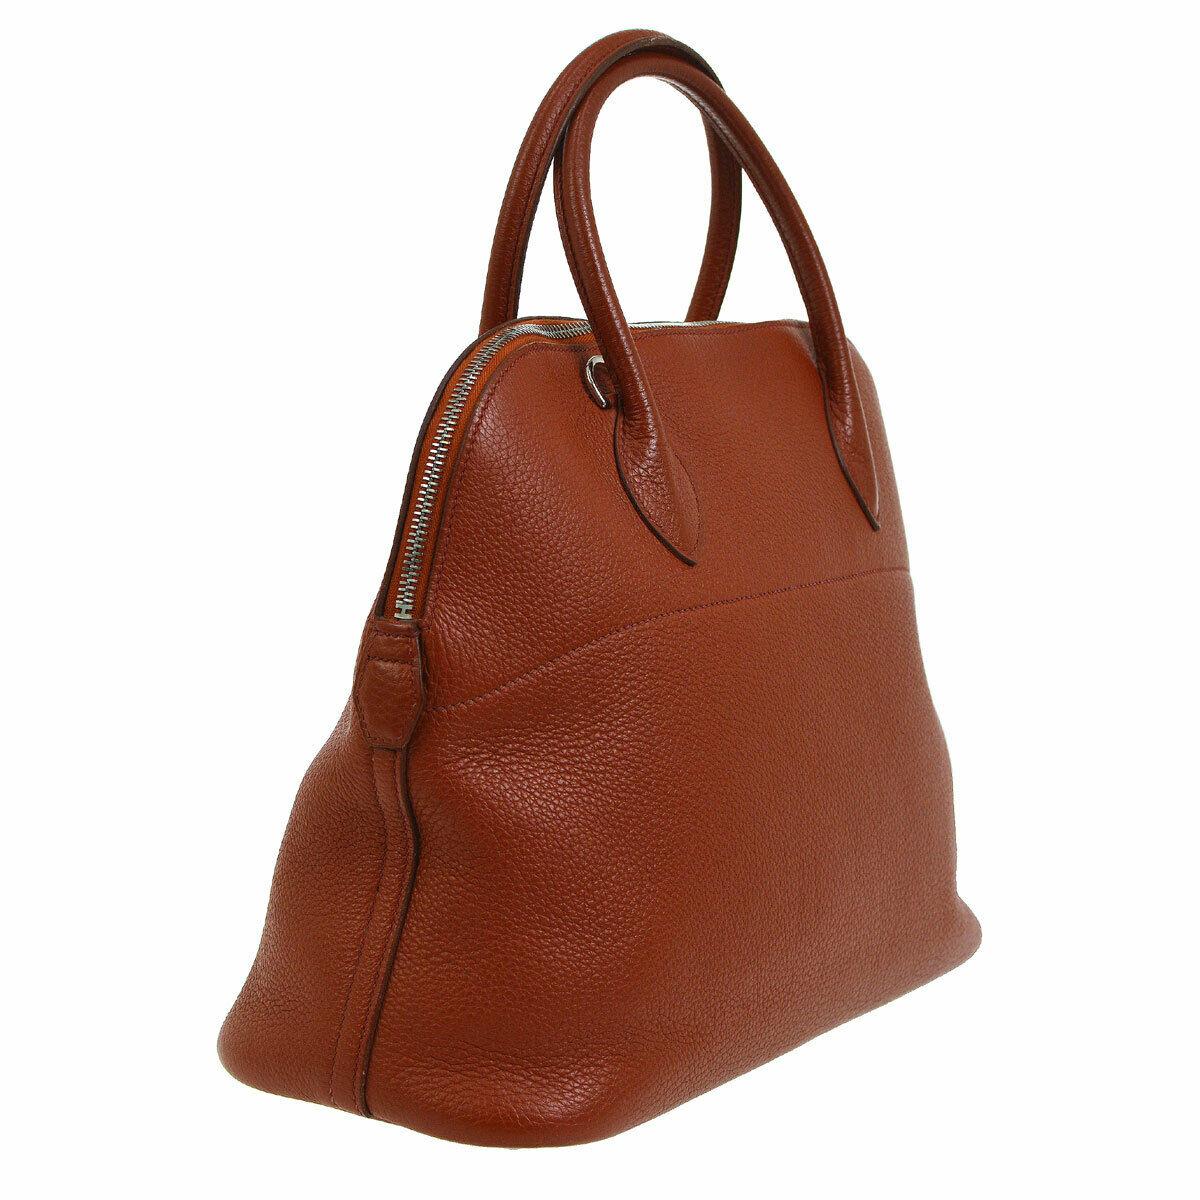 Brown Hermes Leather Carryall Top Handle Satchel Tote Bag